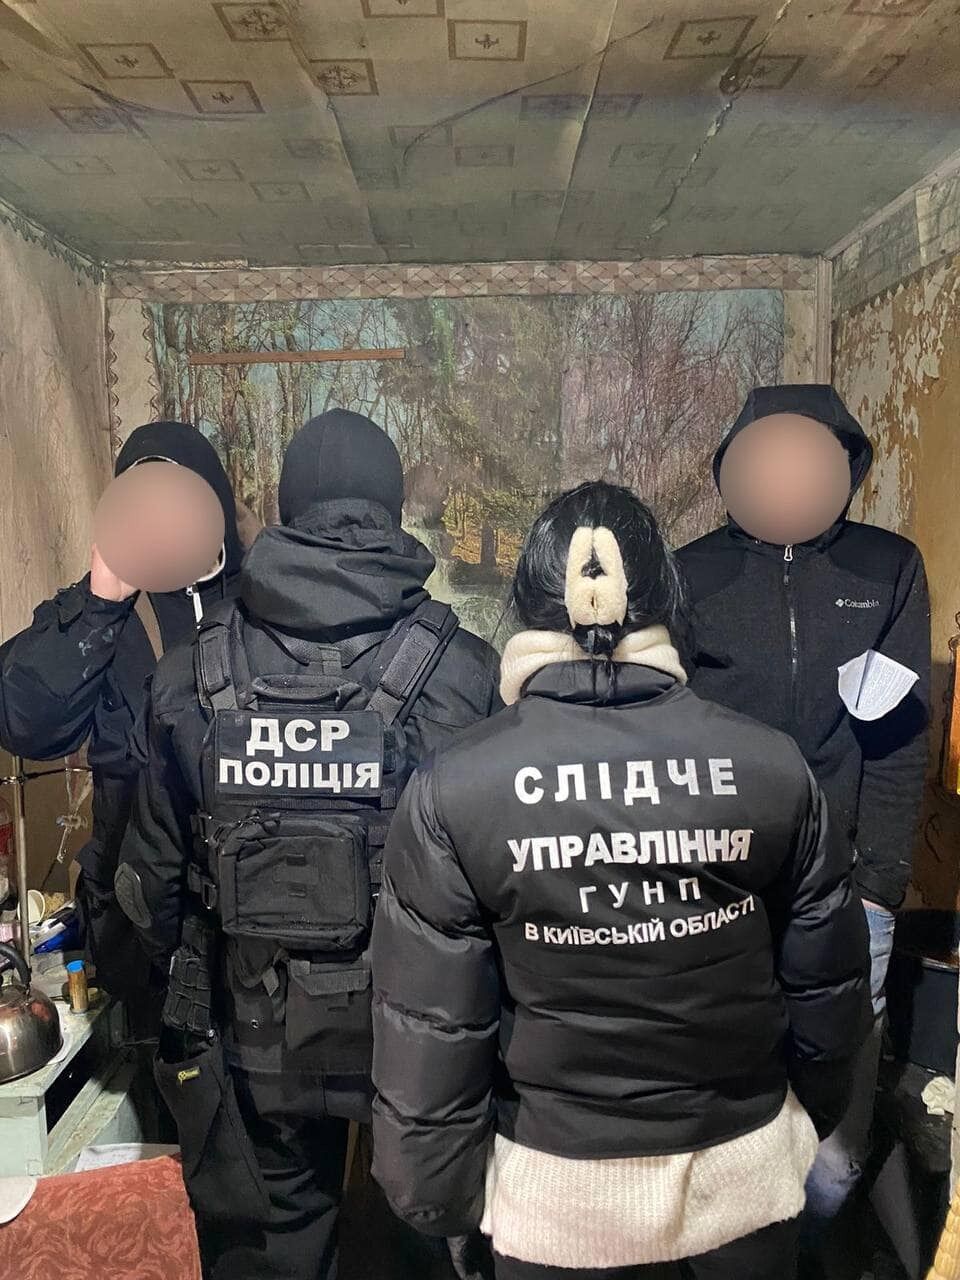 На Киевщине перекрыли канал сбыта наркотиков и оружия: ежемесячный доход злоумышленников составил почти 2 млн грн. Фото